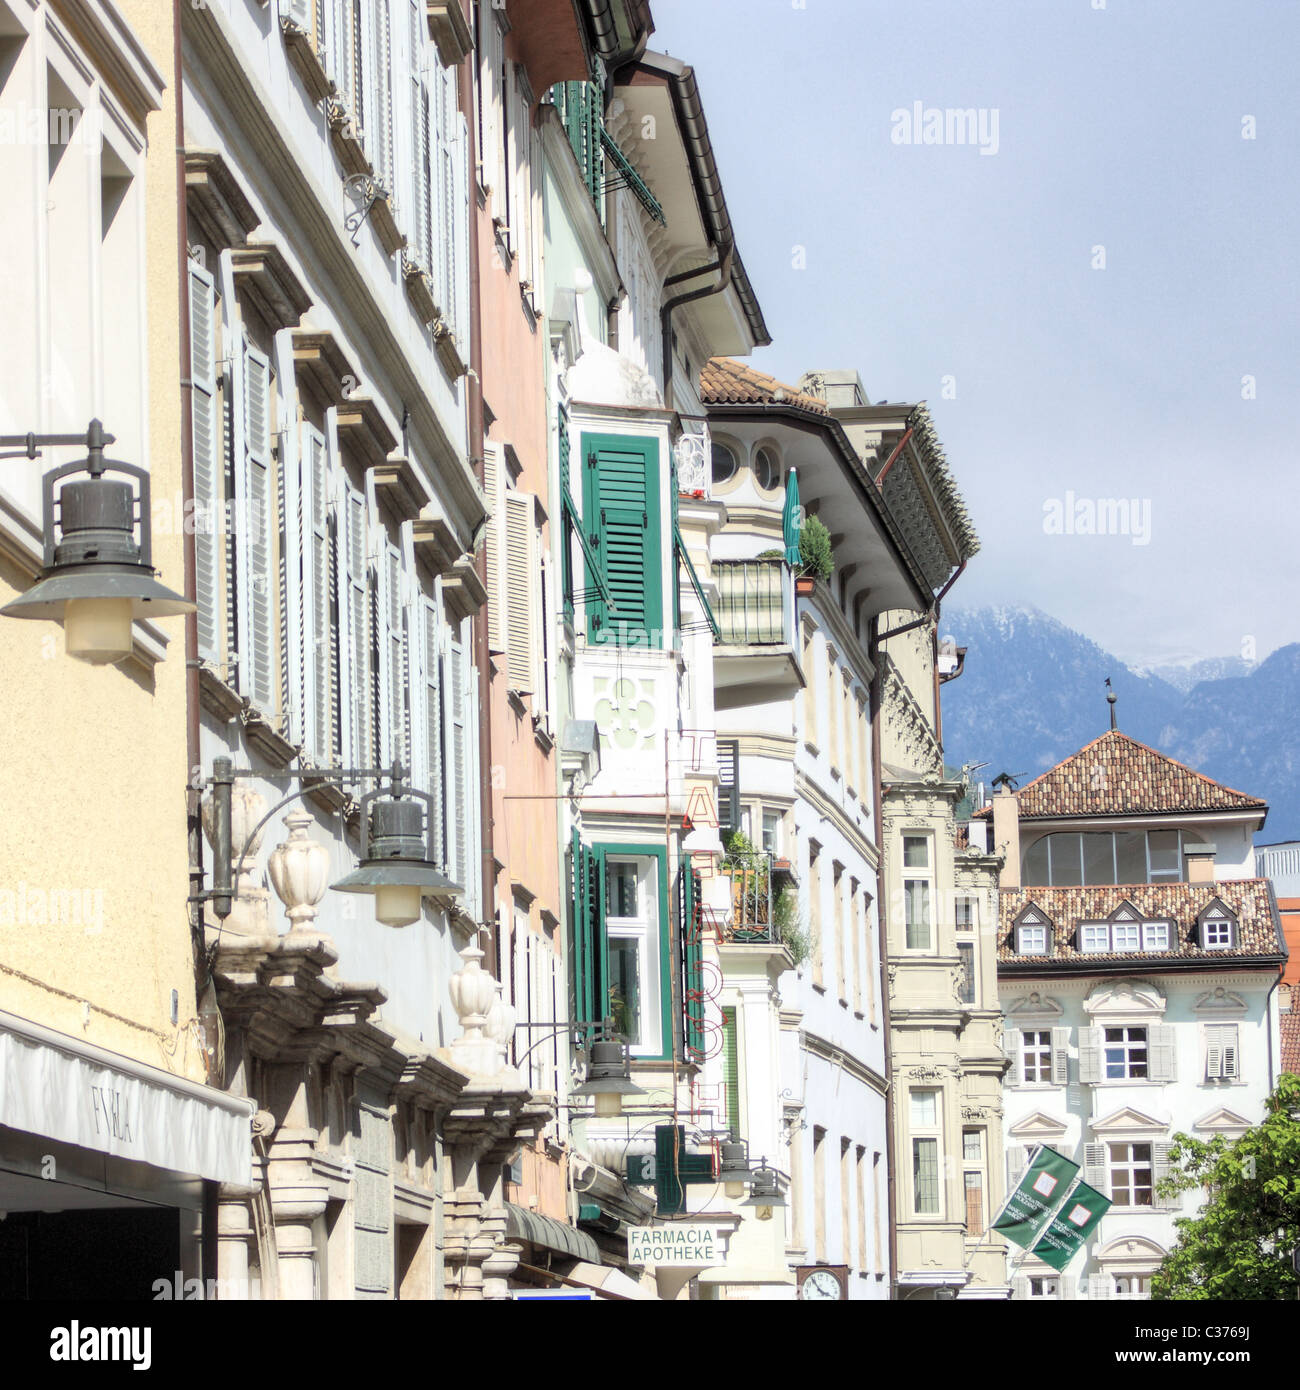 Bozen / Bolzano old town, Italy Stock Photo